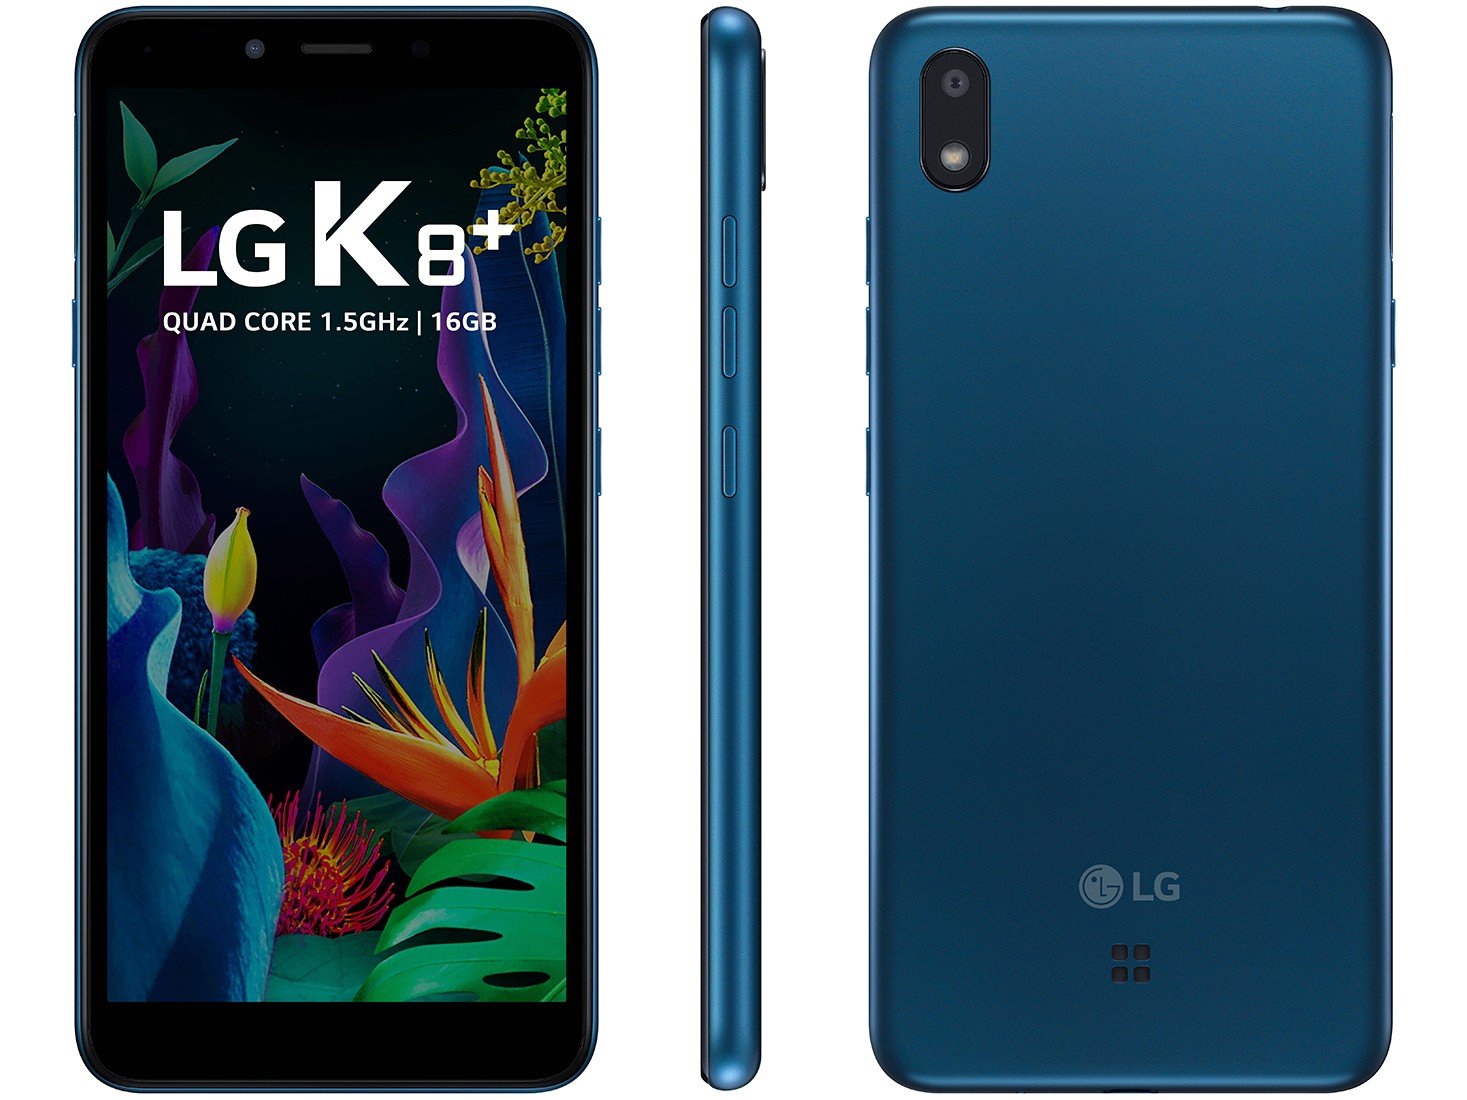 Smartphone LG K8 Plus 16GB Azul 4G Quad-Core - 1GB RAM 5,45" Câm. 8MP + Câm. Selfie 5MP